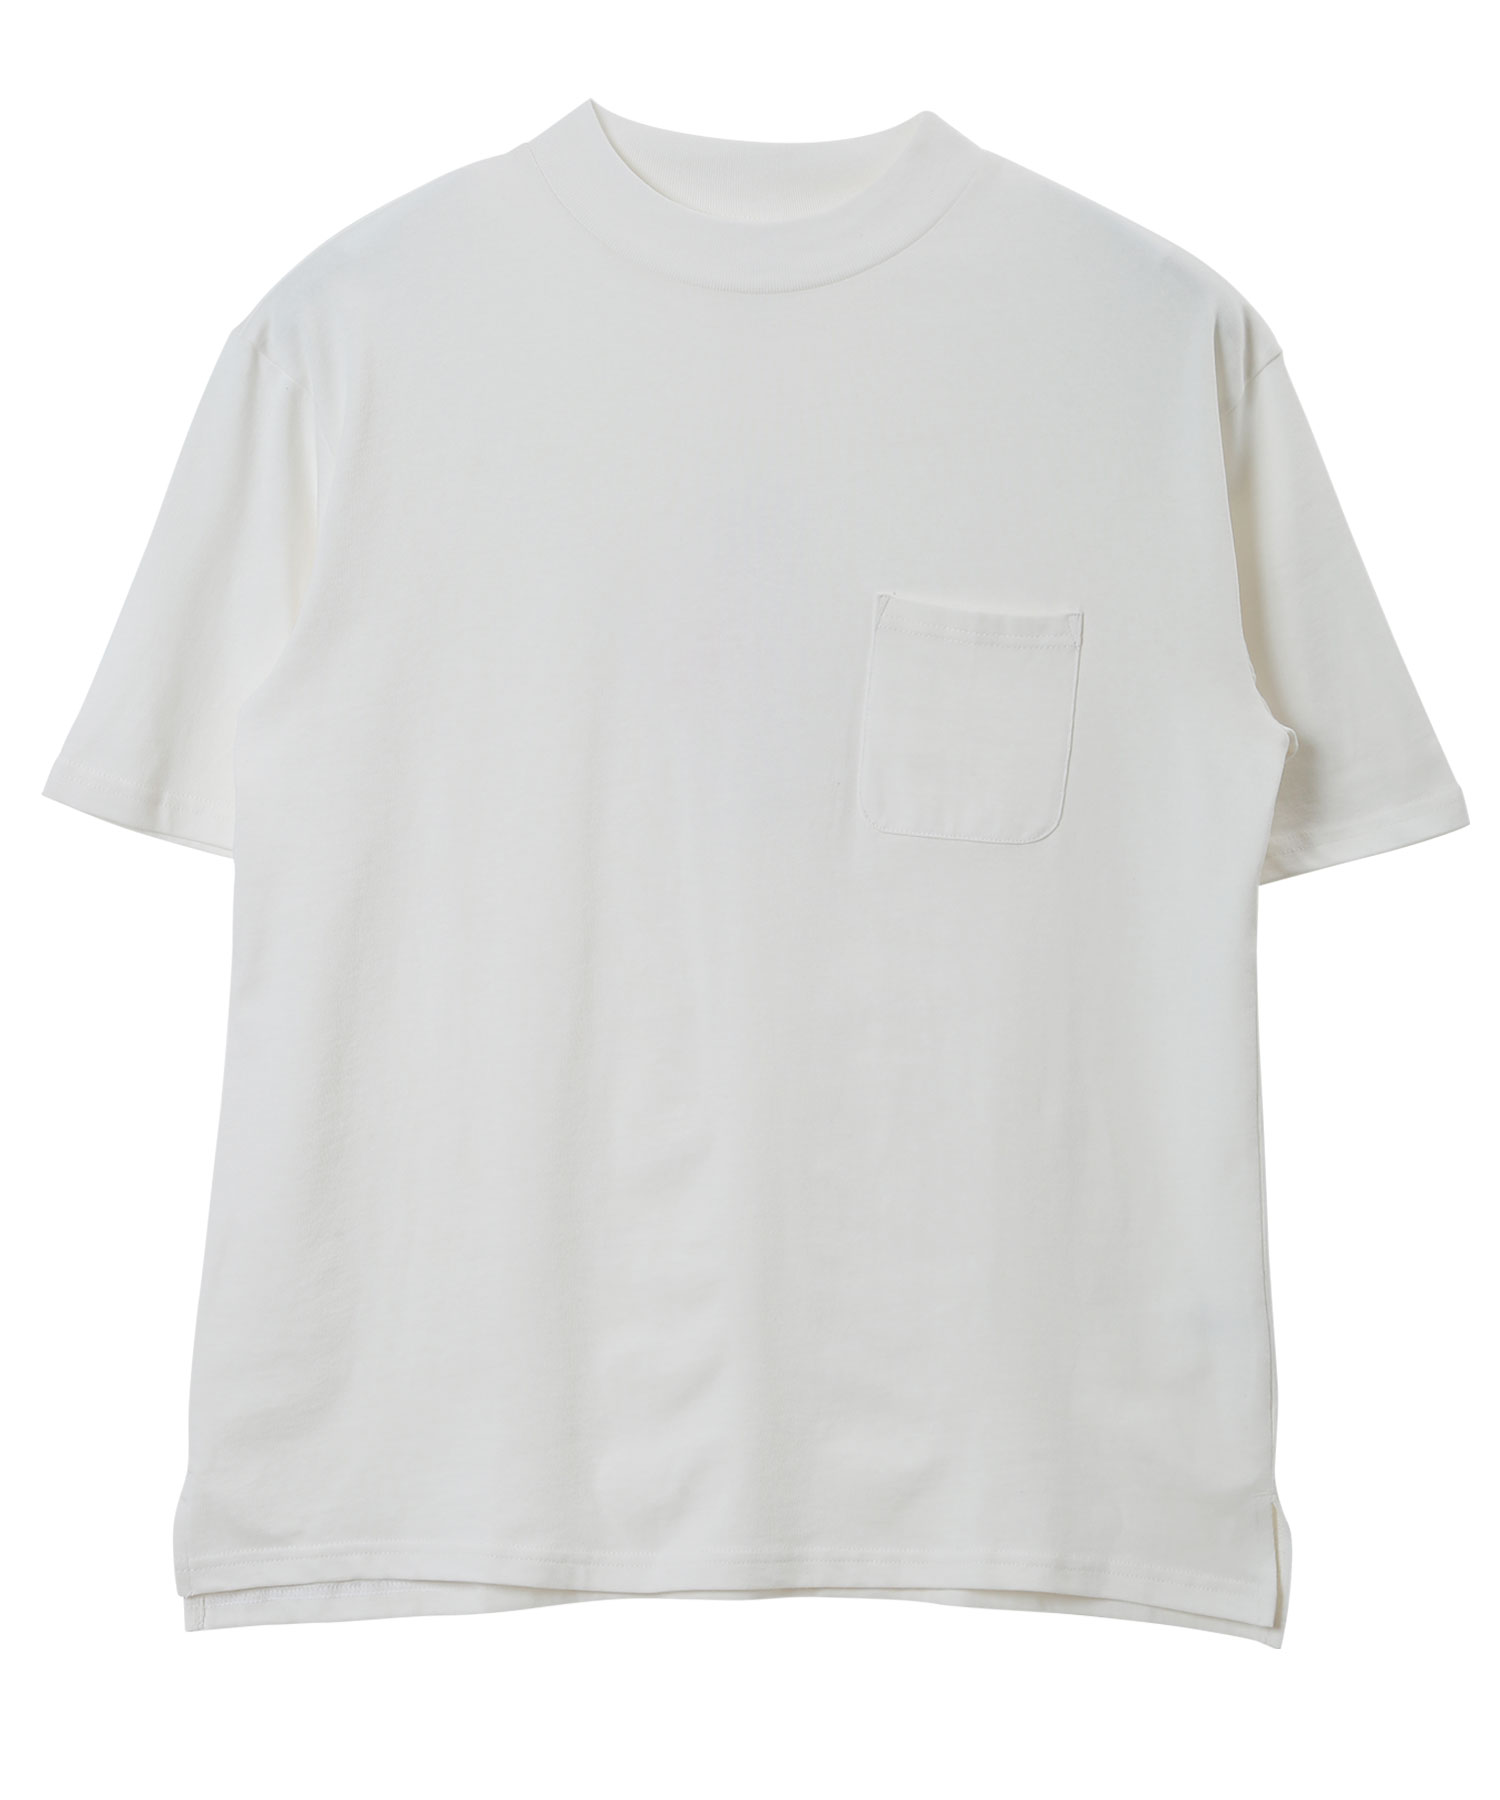 モックネックTシャツ / Tシャツ メンズ ティーシャツ 半袖 モック 